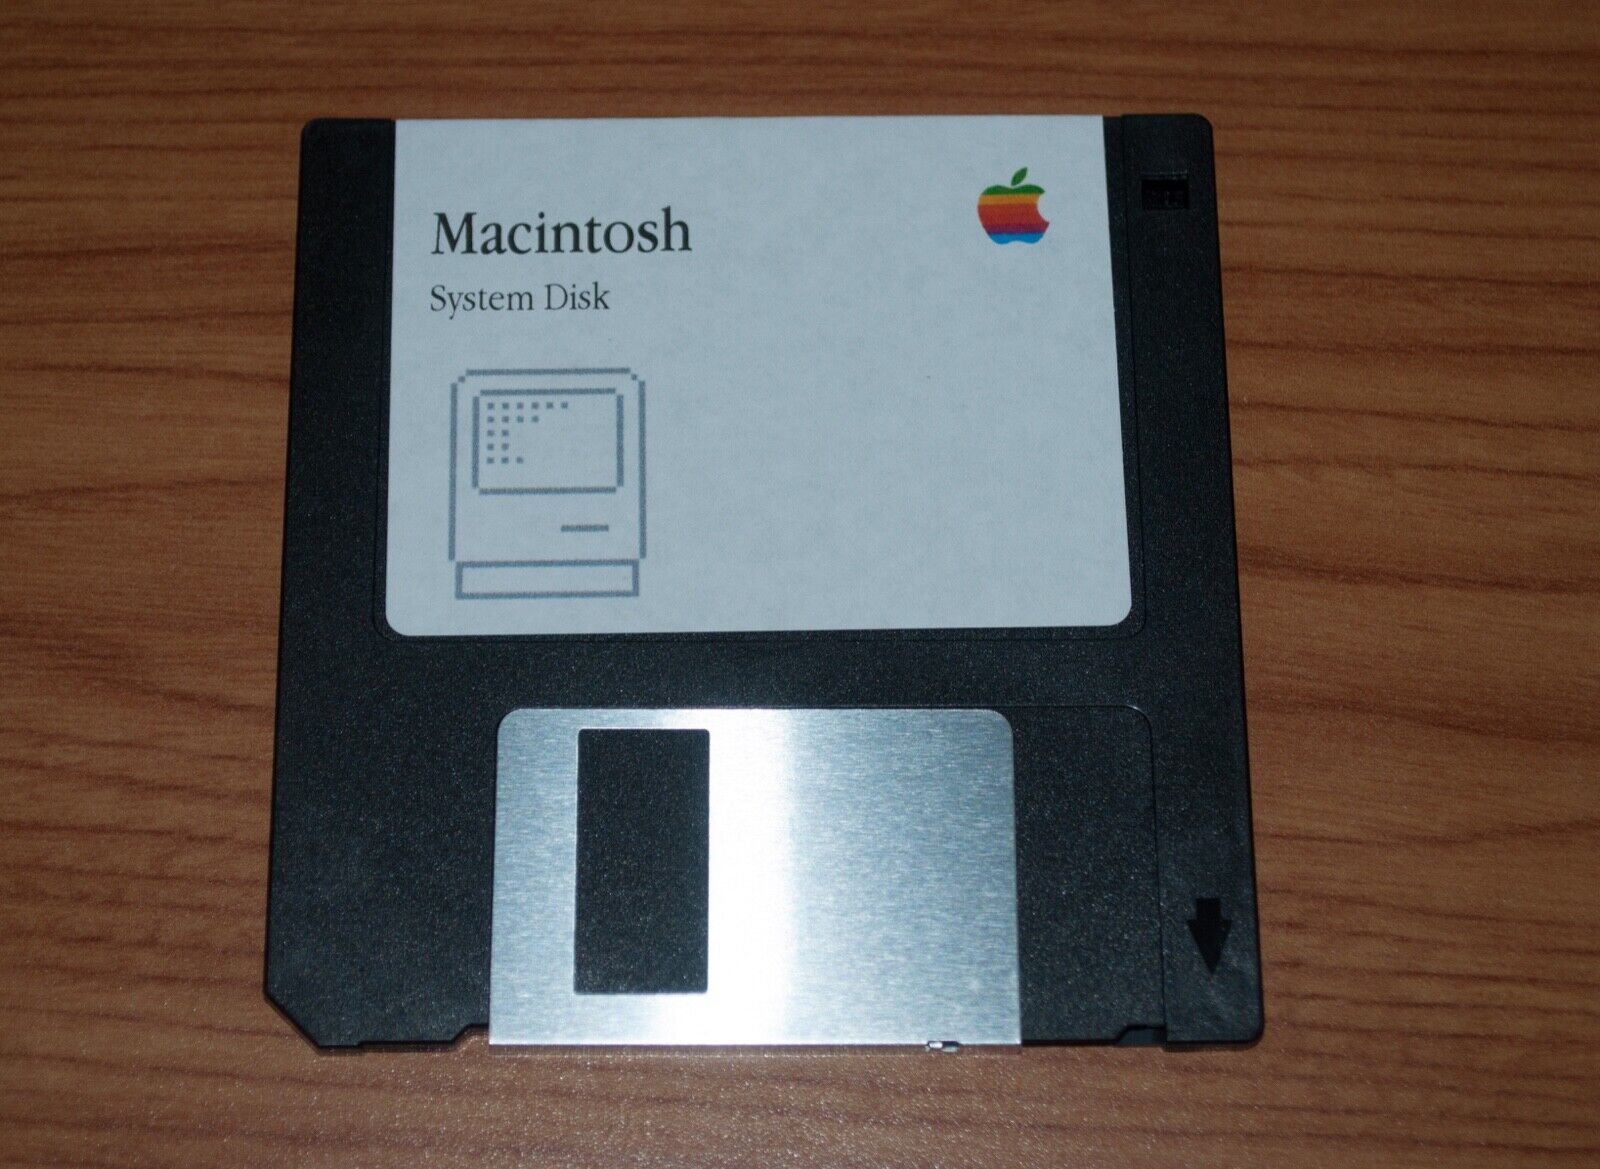 Apple Macintosh Startup Disk for Vintage Mac - System 6.0.8 - 800K disk